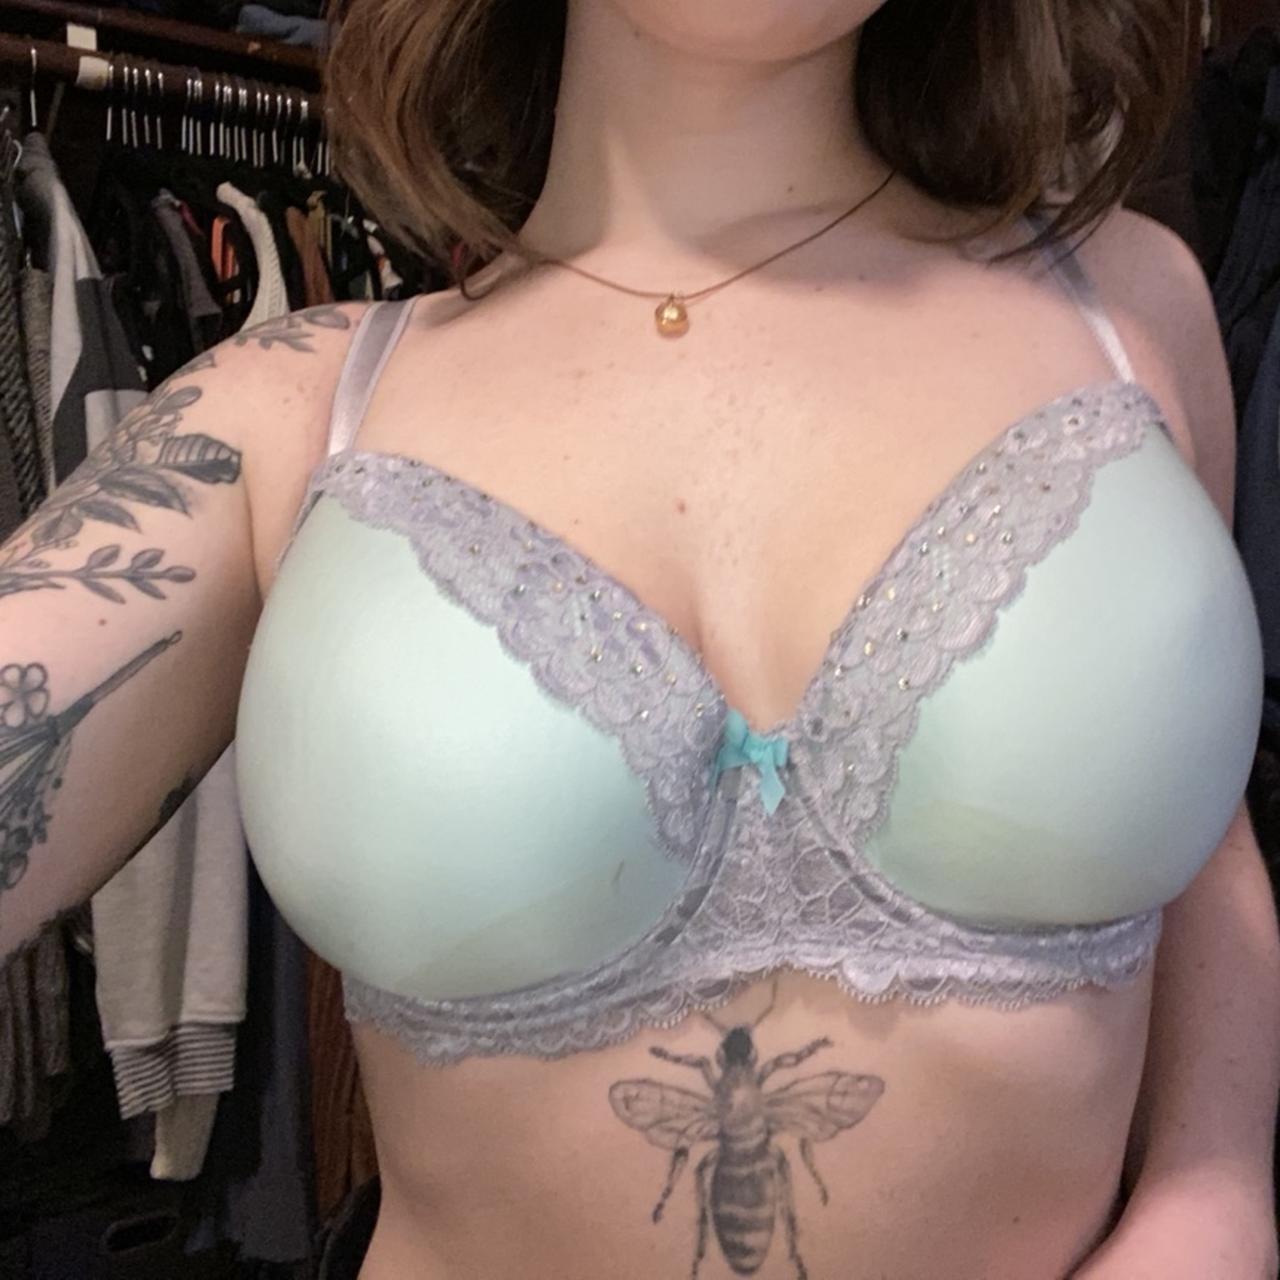 Victoria’s Secret bra size 34DDD (34F, wasn’t able